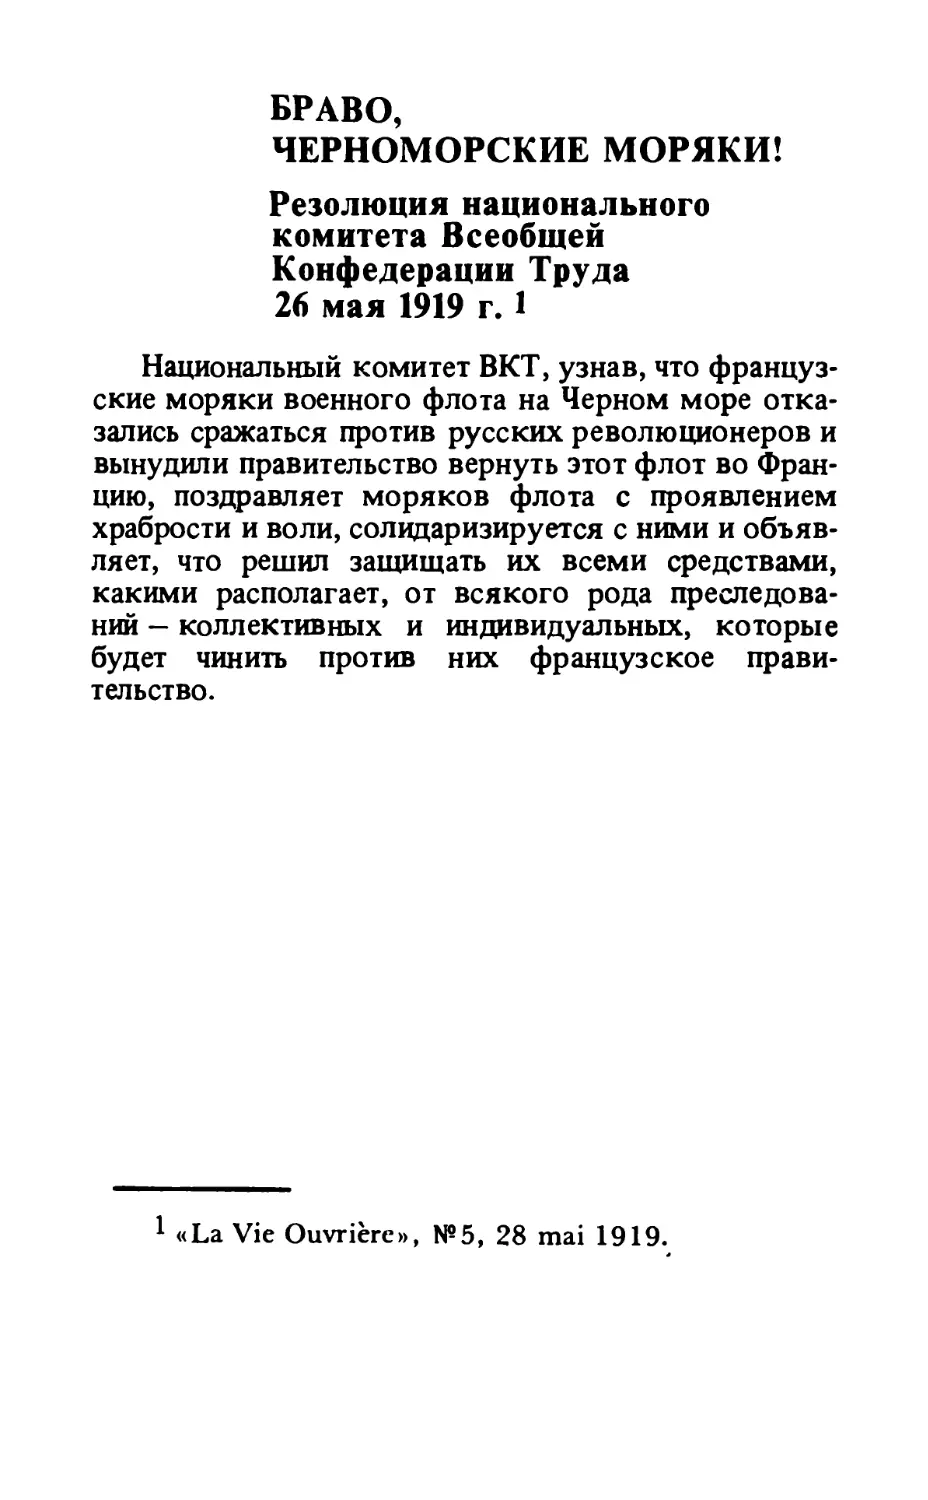 Браво, черноморские моряки! Резолюция национального комитета Всеобщей конфедерации труда 26 мая 1919 года